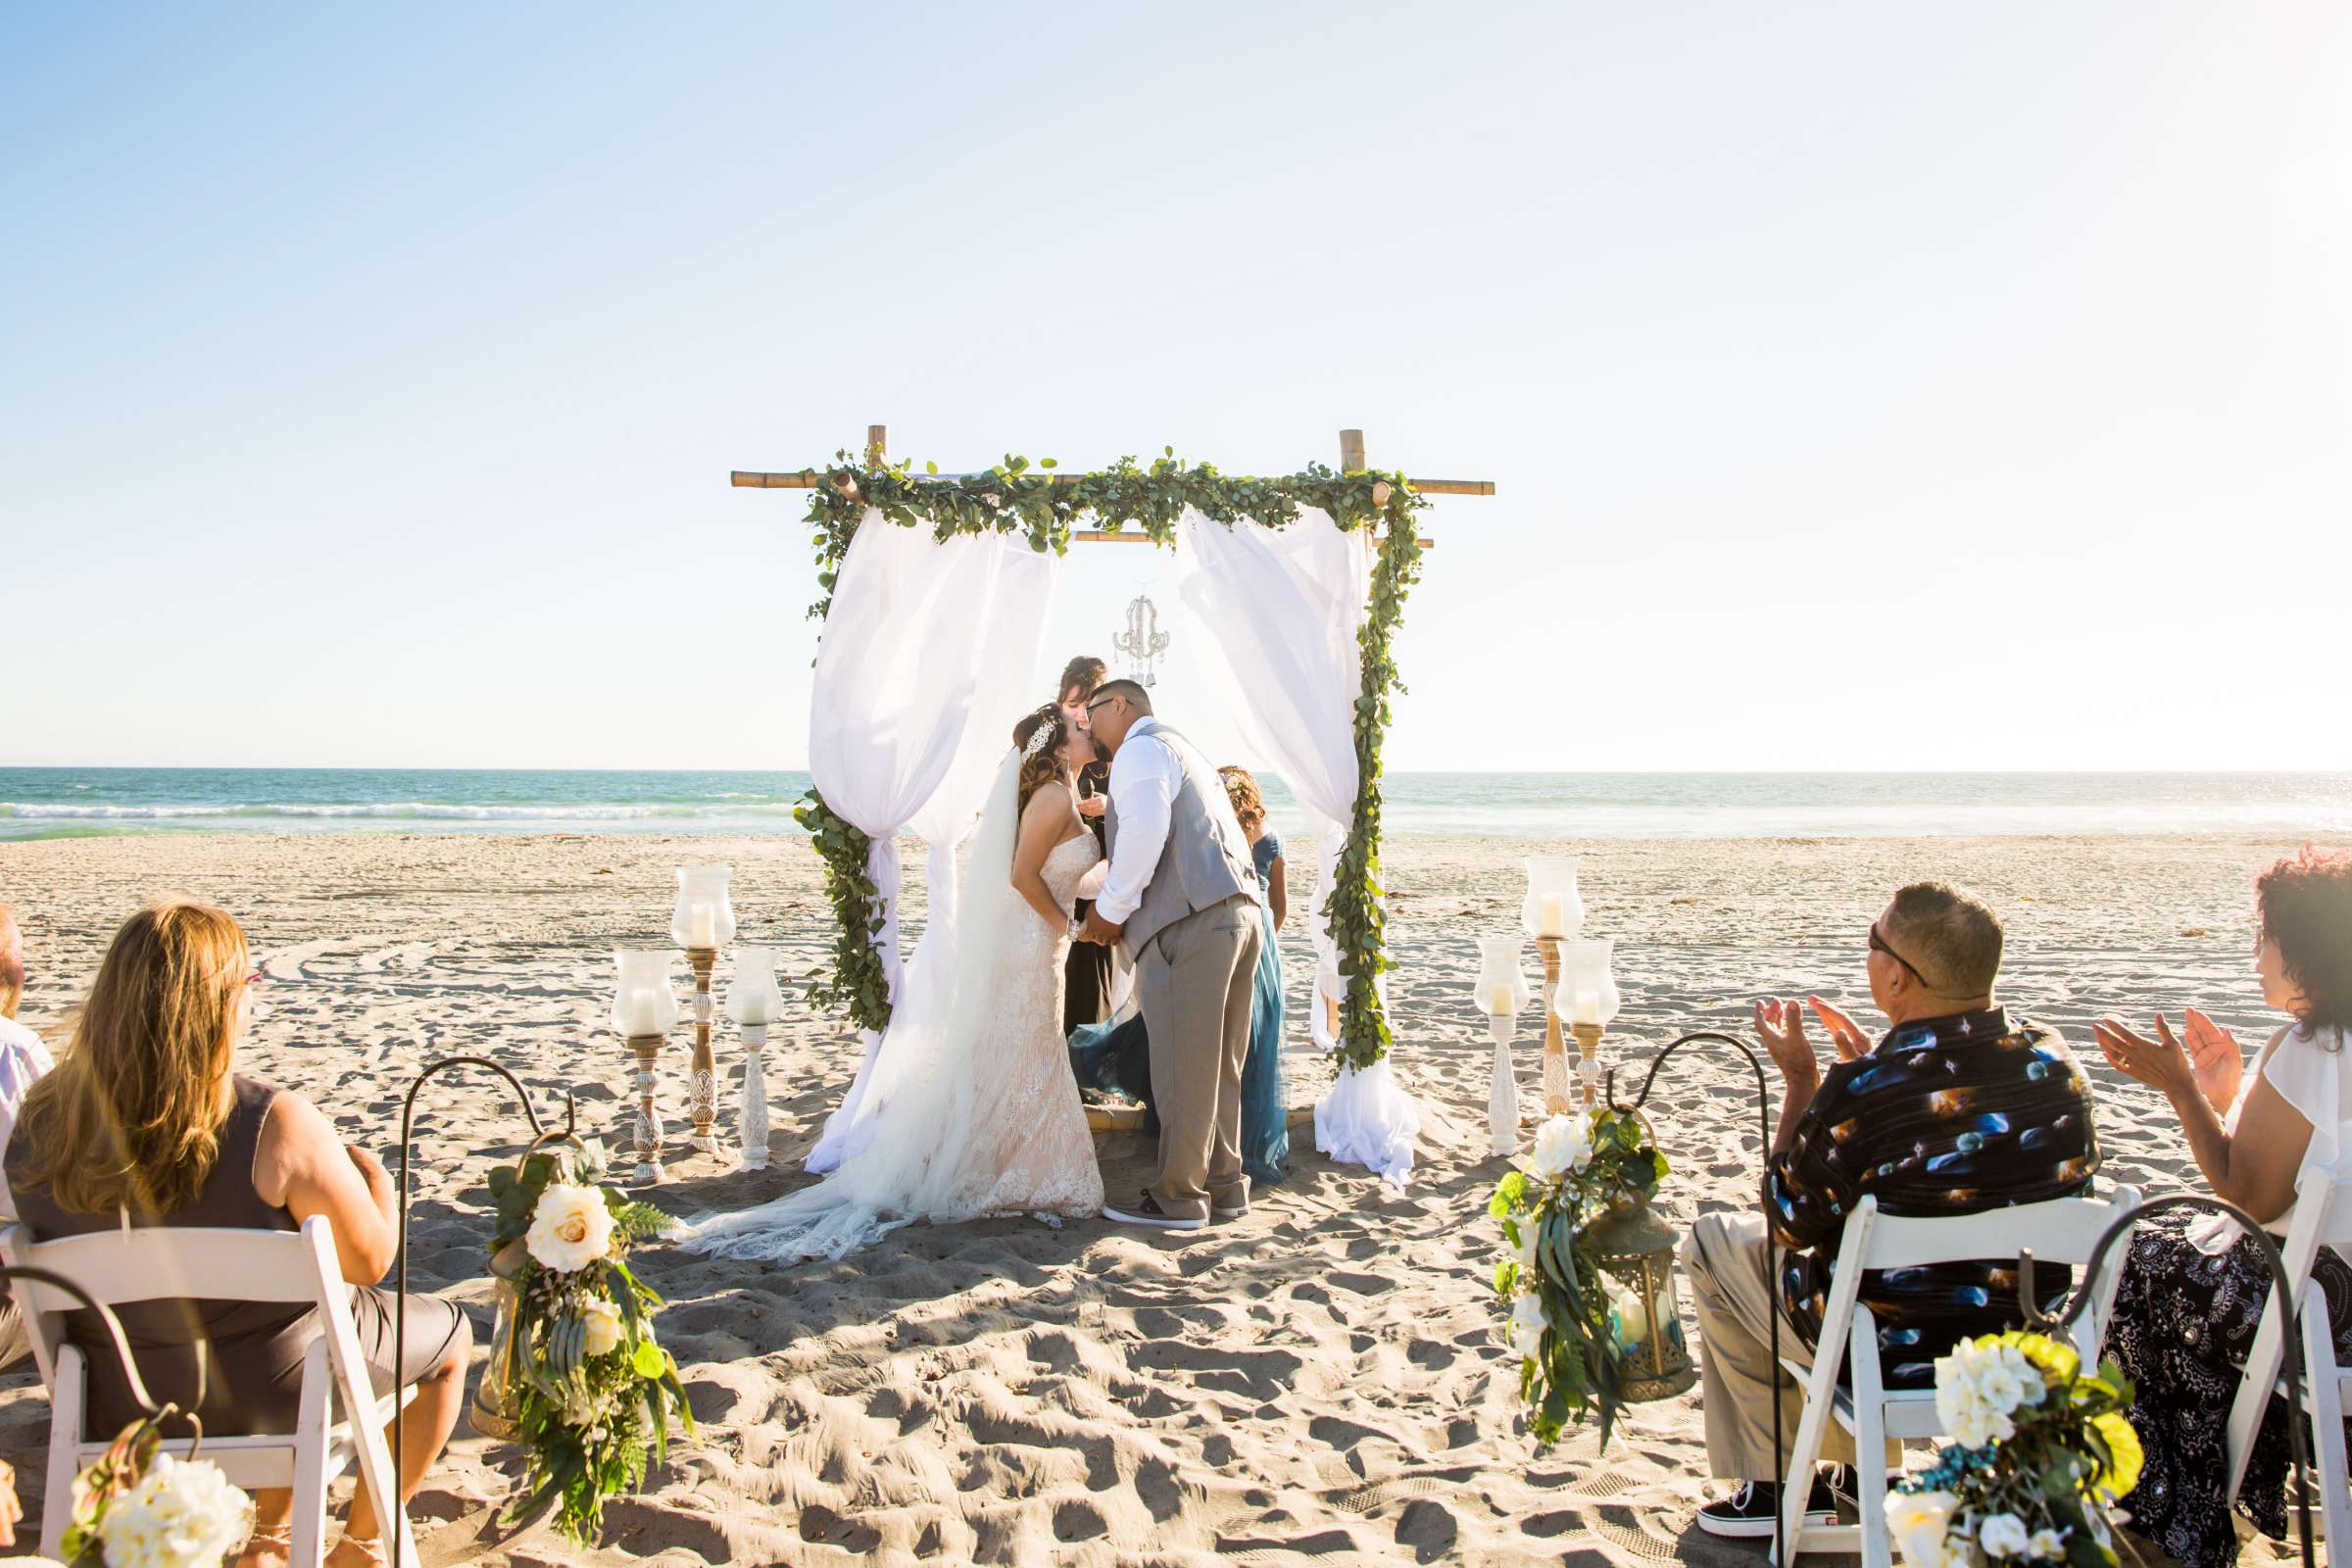 Del Mar Beach Resort Wedding coordinated by La Casa Del Mar, Alisa and Carlos Wedding Photo #380890 by True Photography